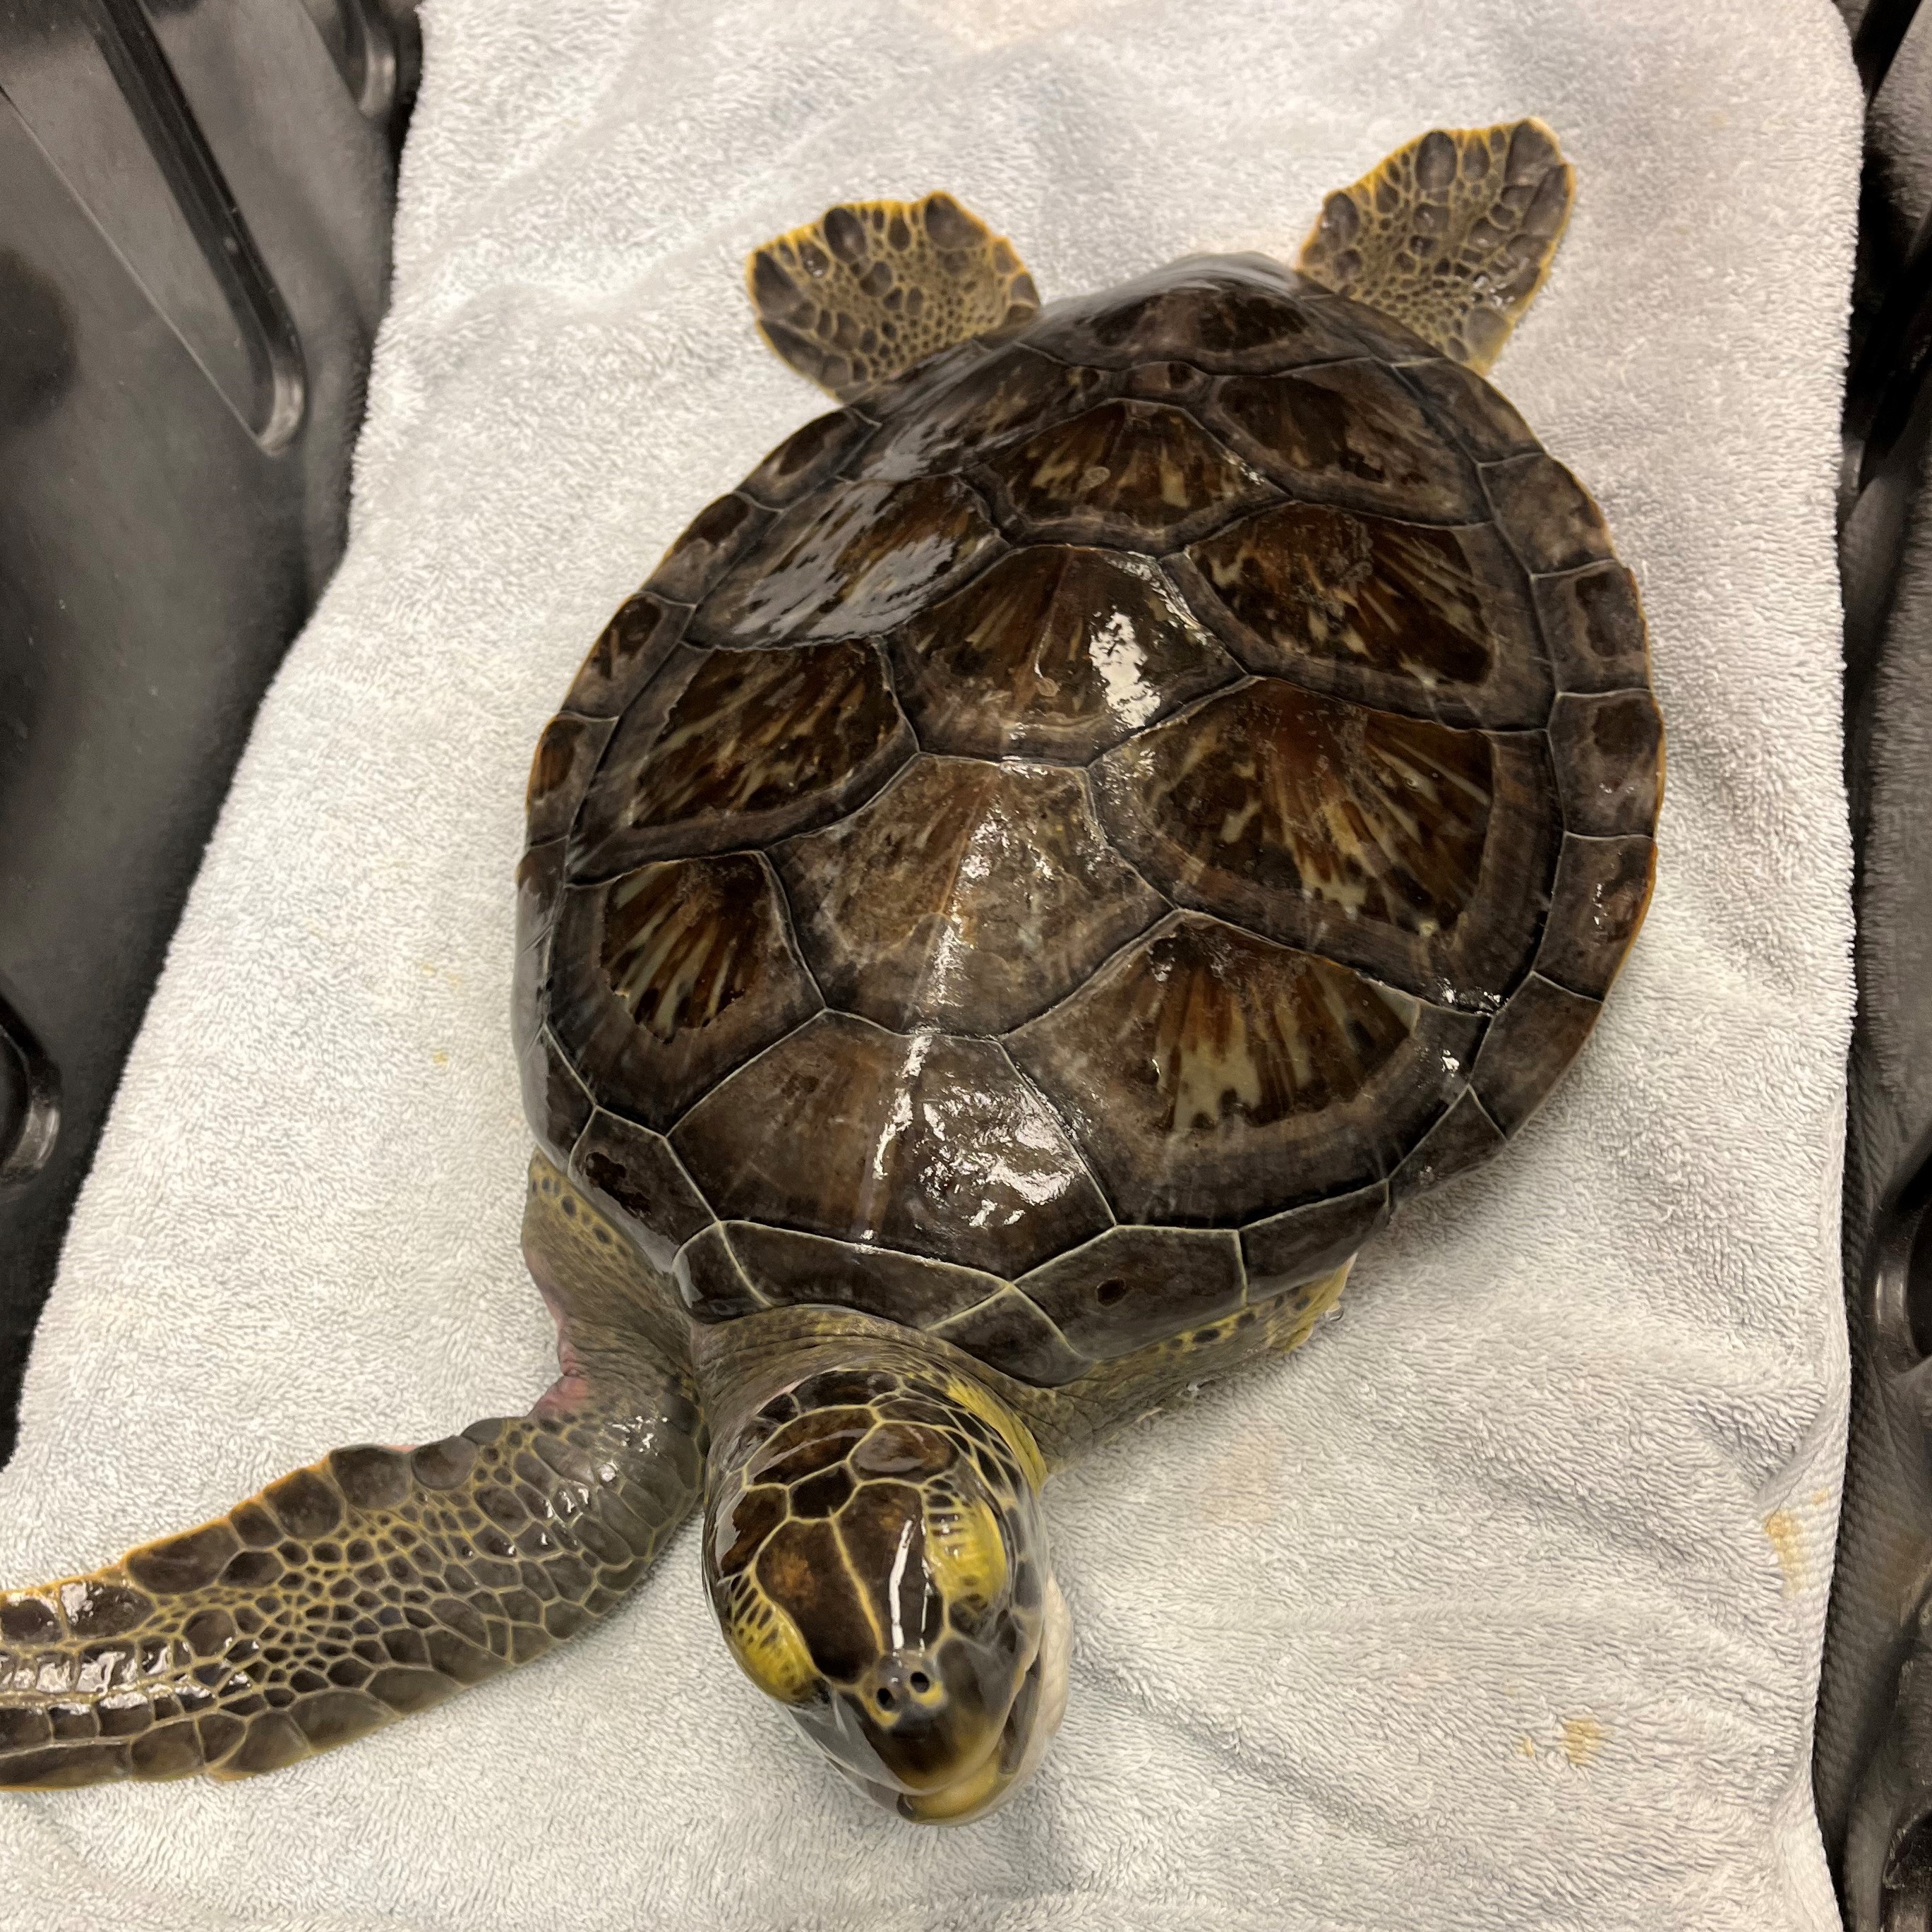 Sea Turtle Pesto Released March 22